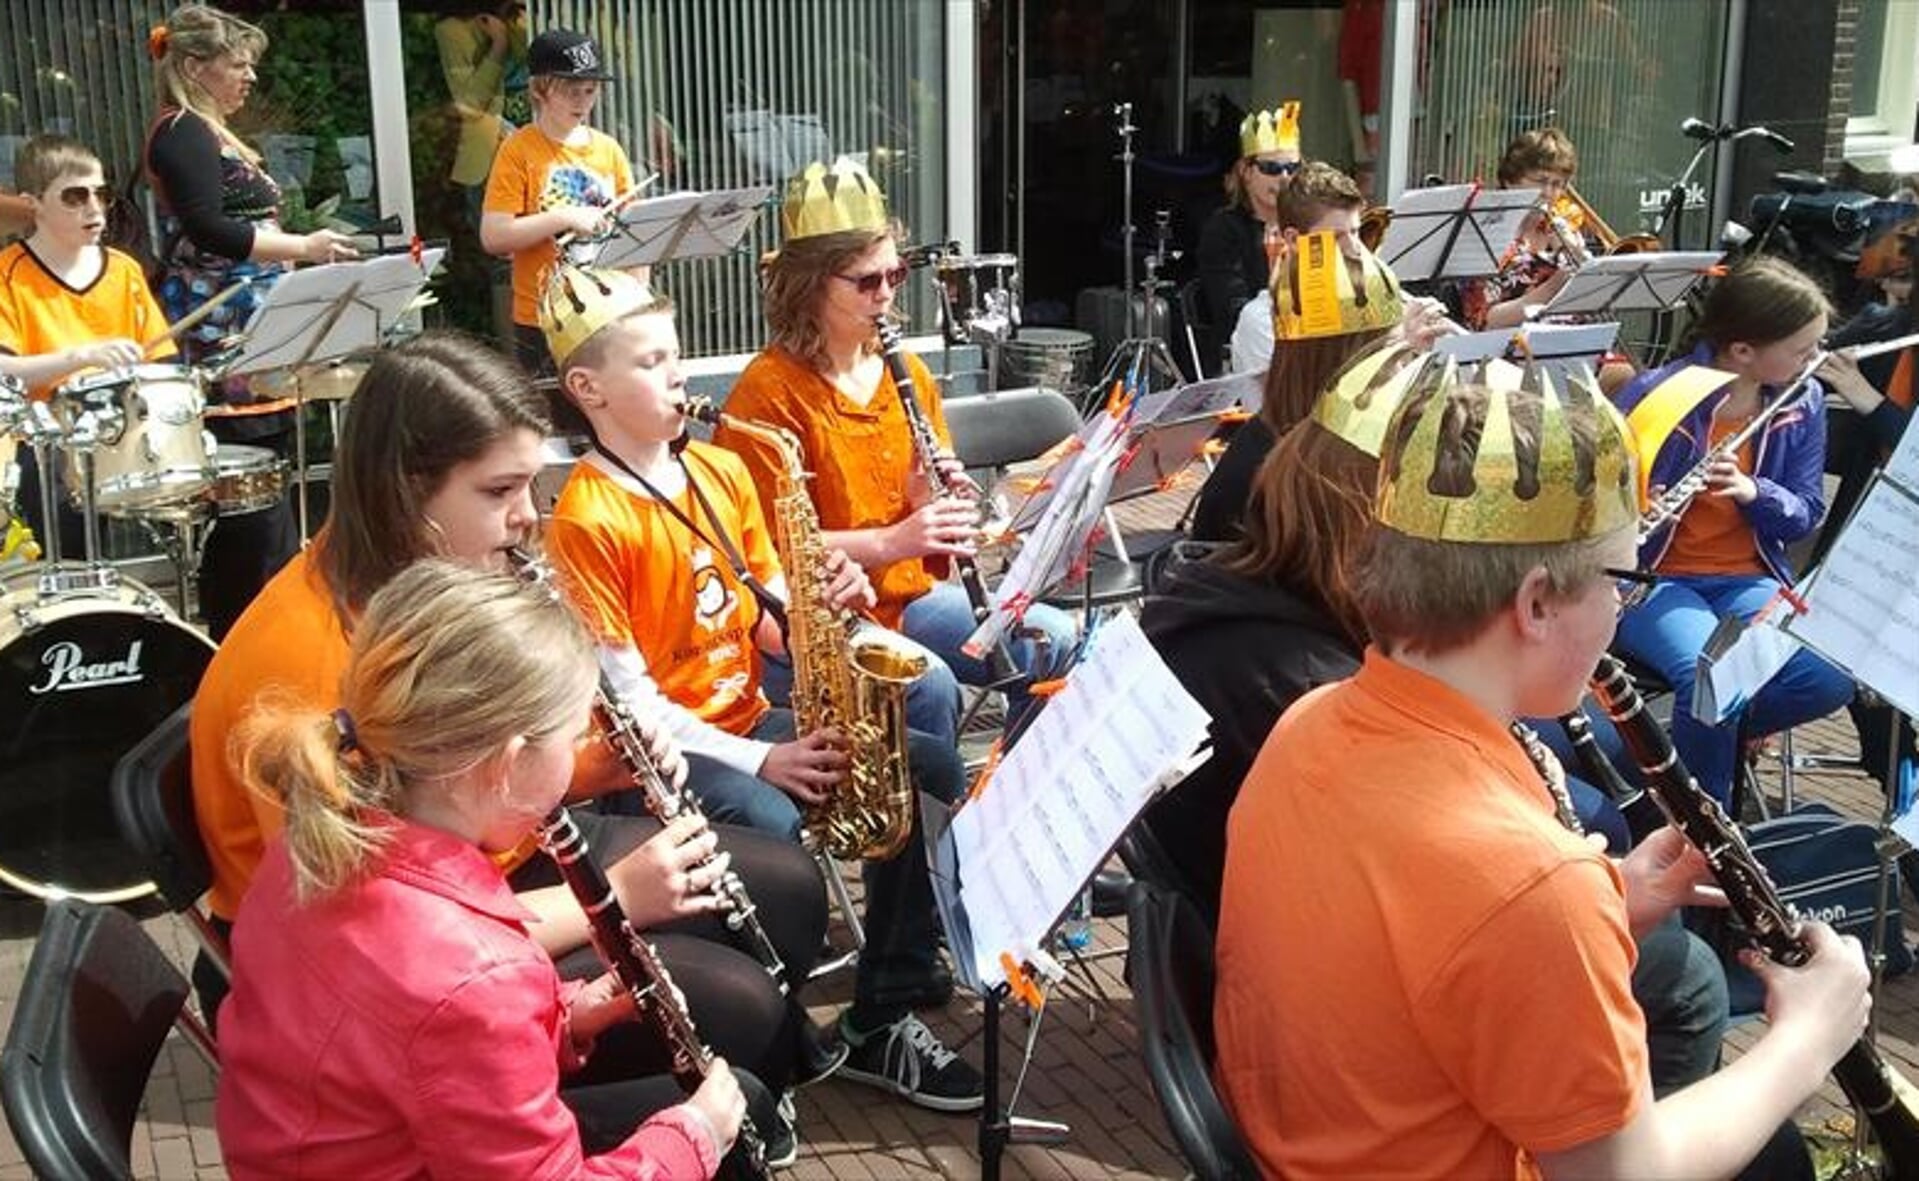 Muziekleerlingen van Boxtel’s Harmonie verzorgen een oranjeconcertje tijdens Koninginnedag 2013.